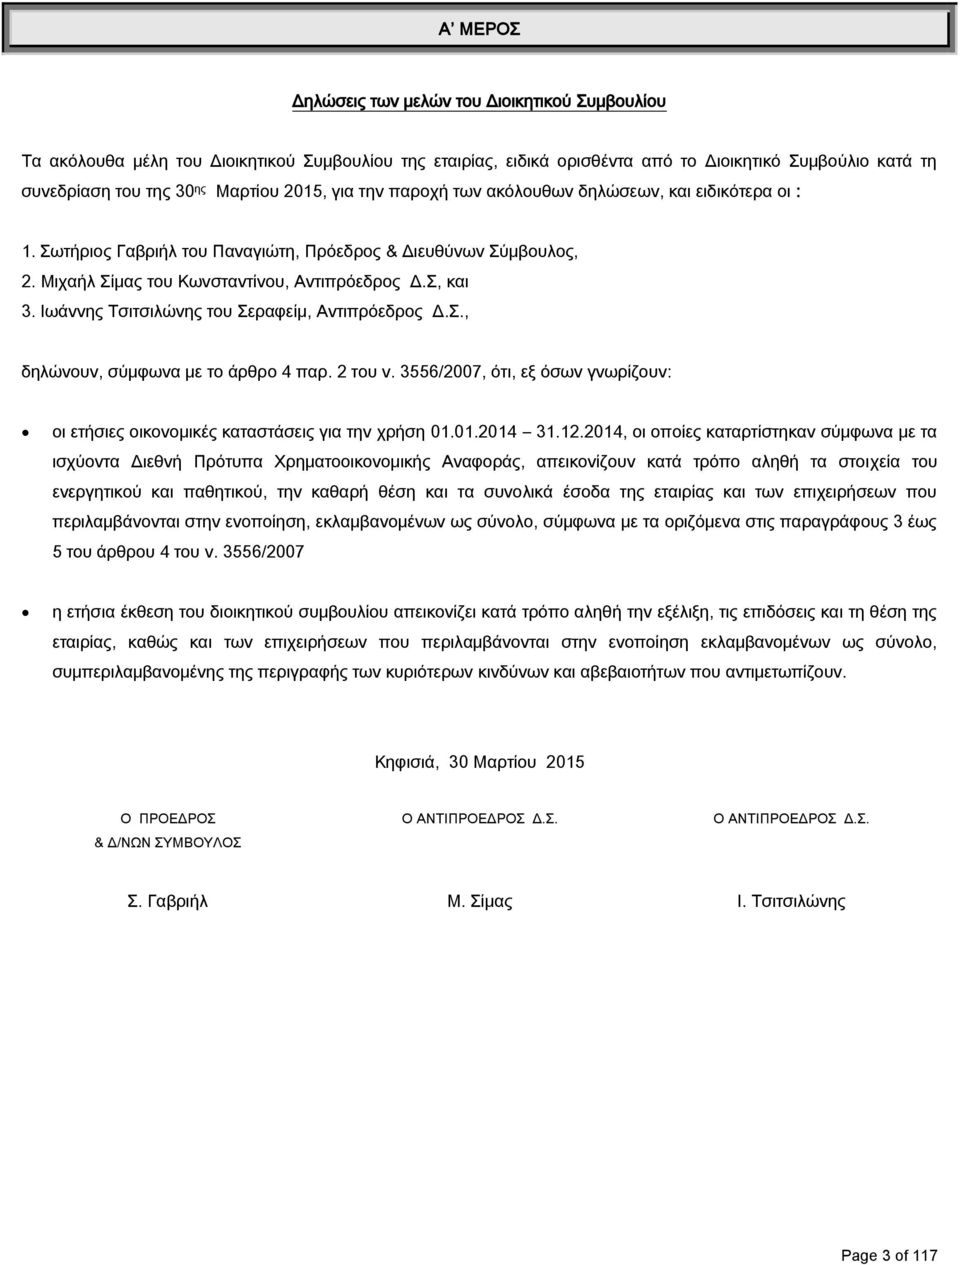 Ιωάννης Τσιτσιλώνης του Σεραφείμ, Αντιπρόεδρος Δ.Σ., δηλώνουν, σύμφωνα με το άρθρο 4 παρ. 2 του ν. 3556/2007, ότι, εξ όσων γνωρίζουν: οι ετήσιες οικονομικές καταστάσεις για την χρήση 01.01.2014 31.12.